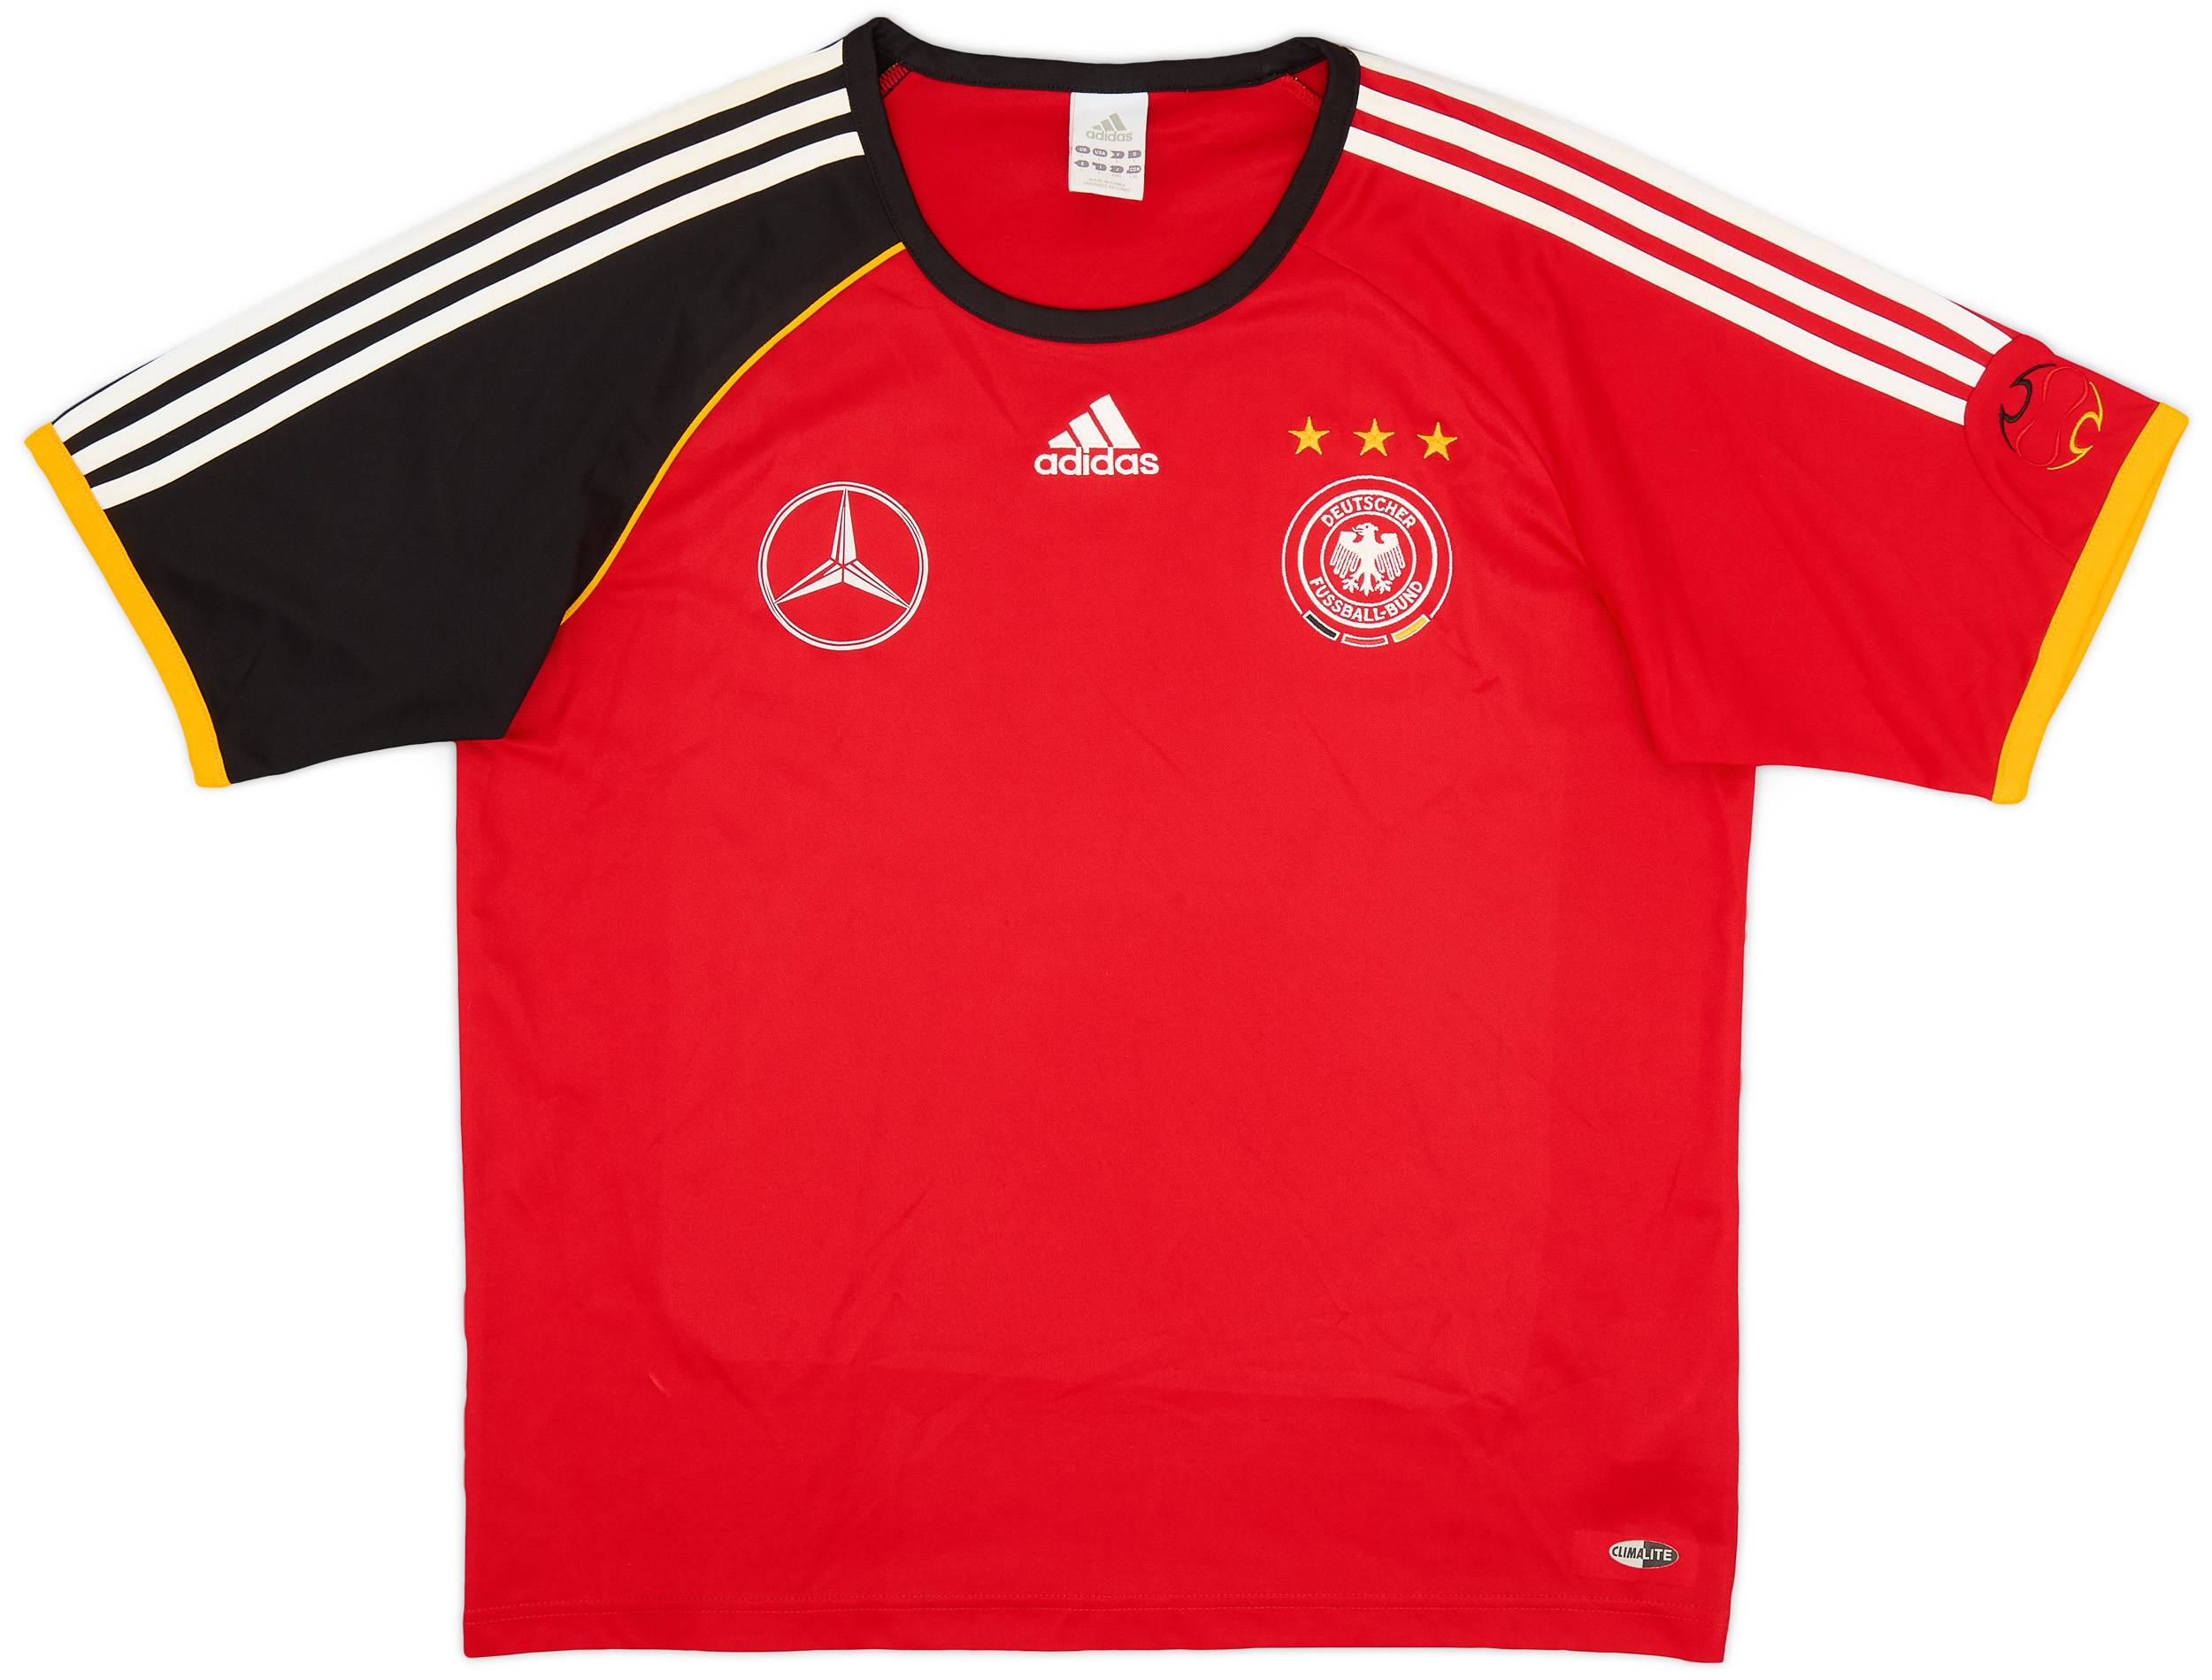 2006-07 Germany adidas Training Shirt - 6/10 - (L)